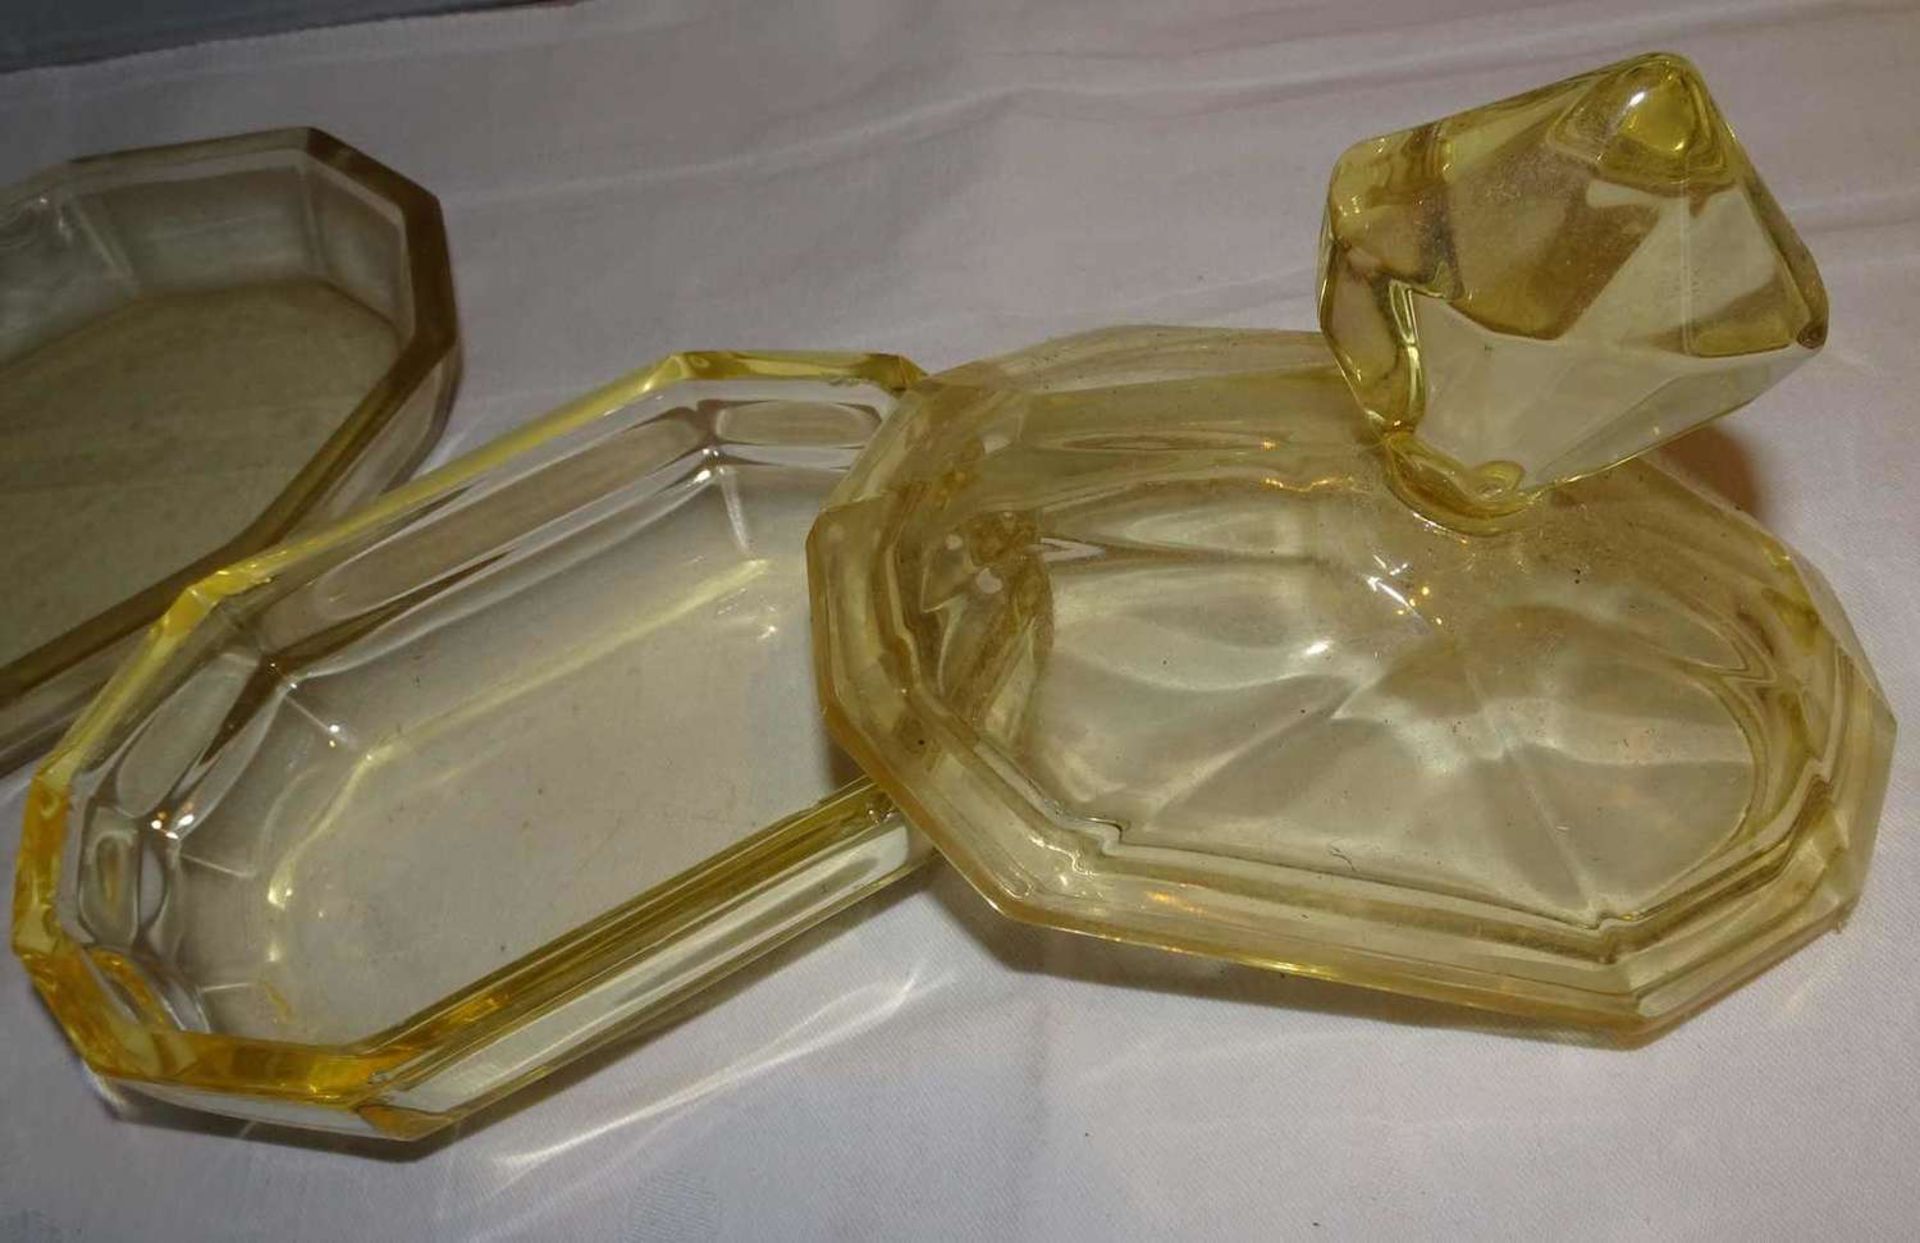 Kristall Parfumflakon Set, bestehend aus 2 Flakons, 1 Glasdeckeldose, sowie 1 Schale. Farbe: Gelbto - Bild 2 aus 2